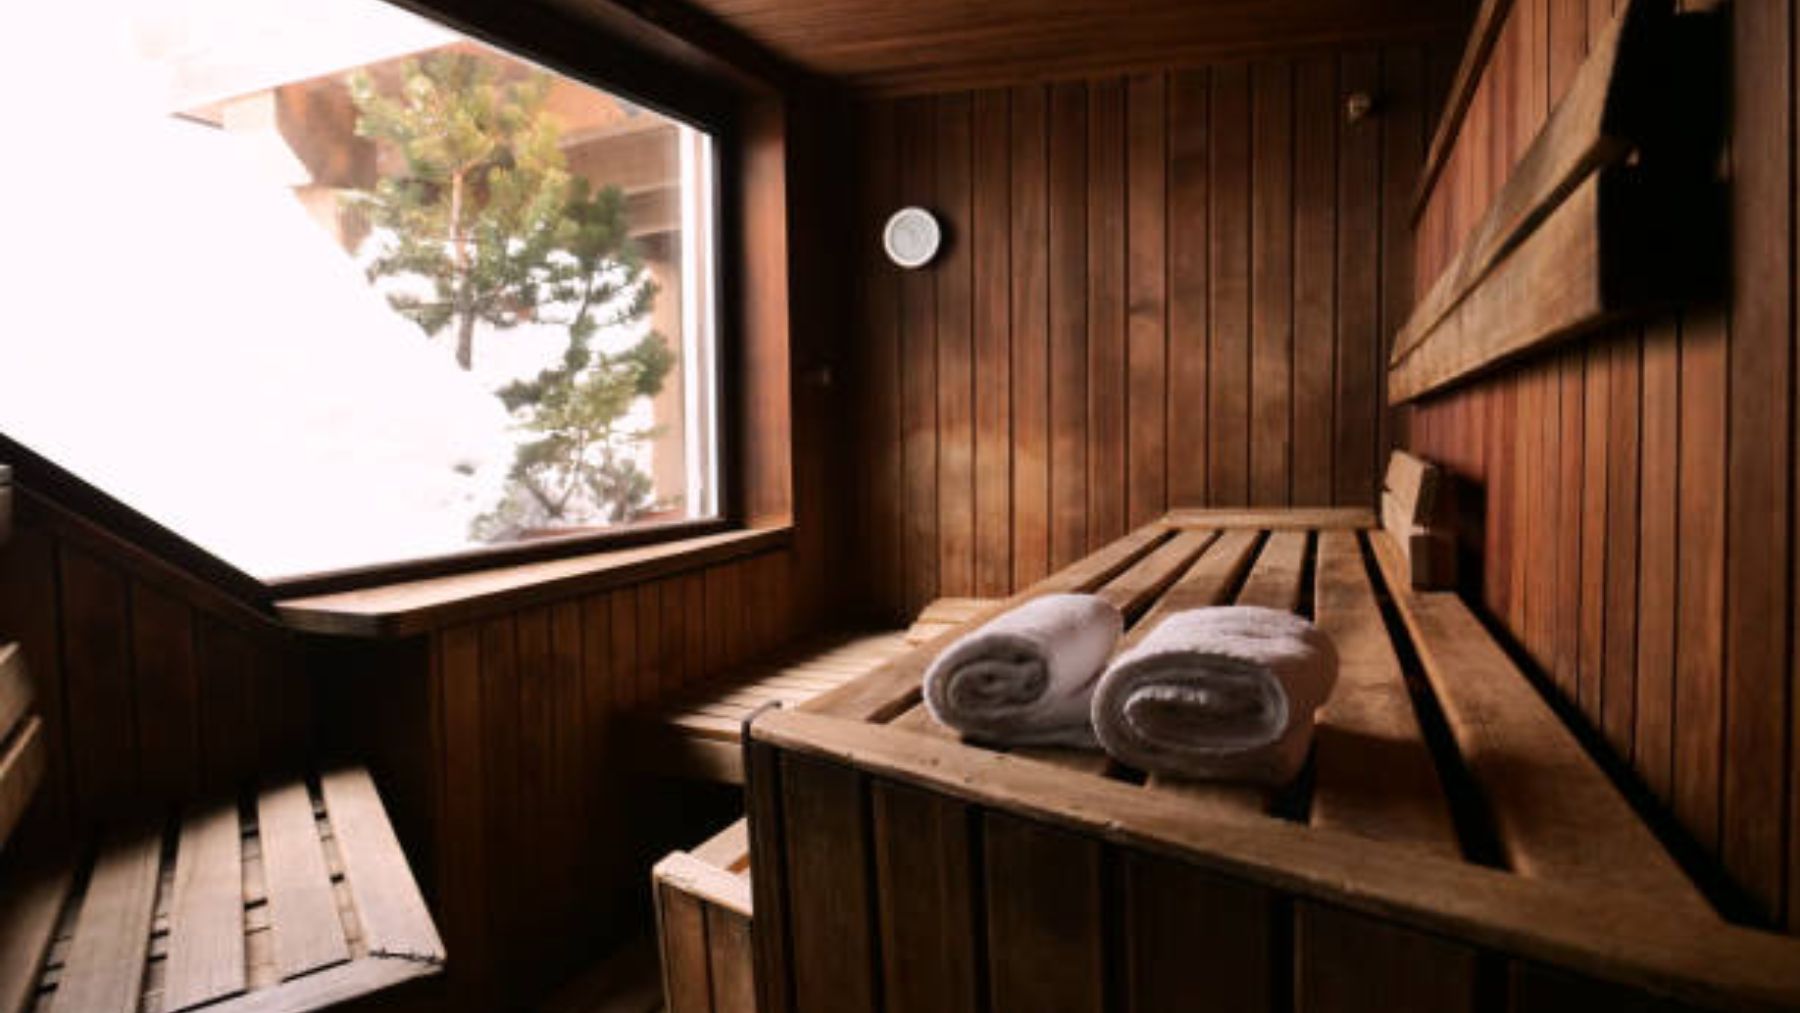 Sauna finlandesa: beneficios y precauciones